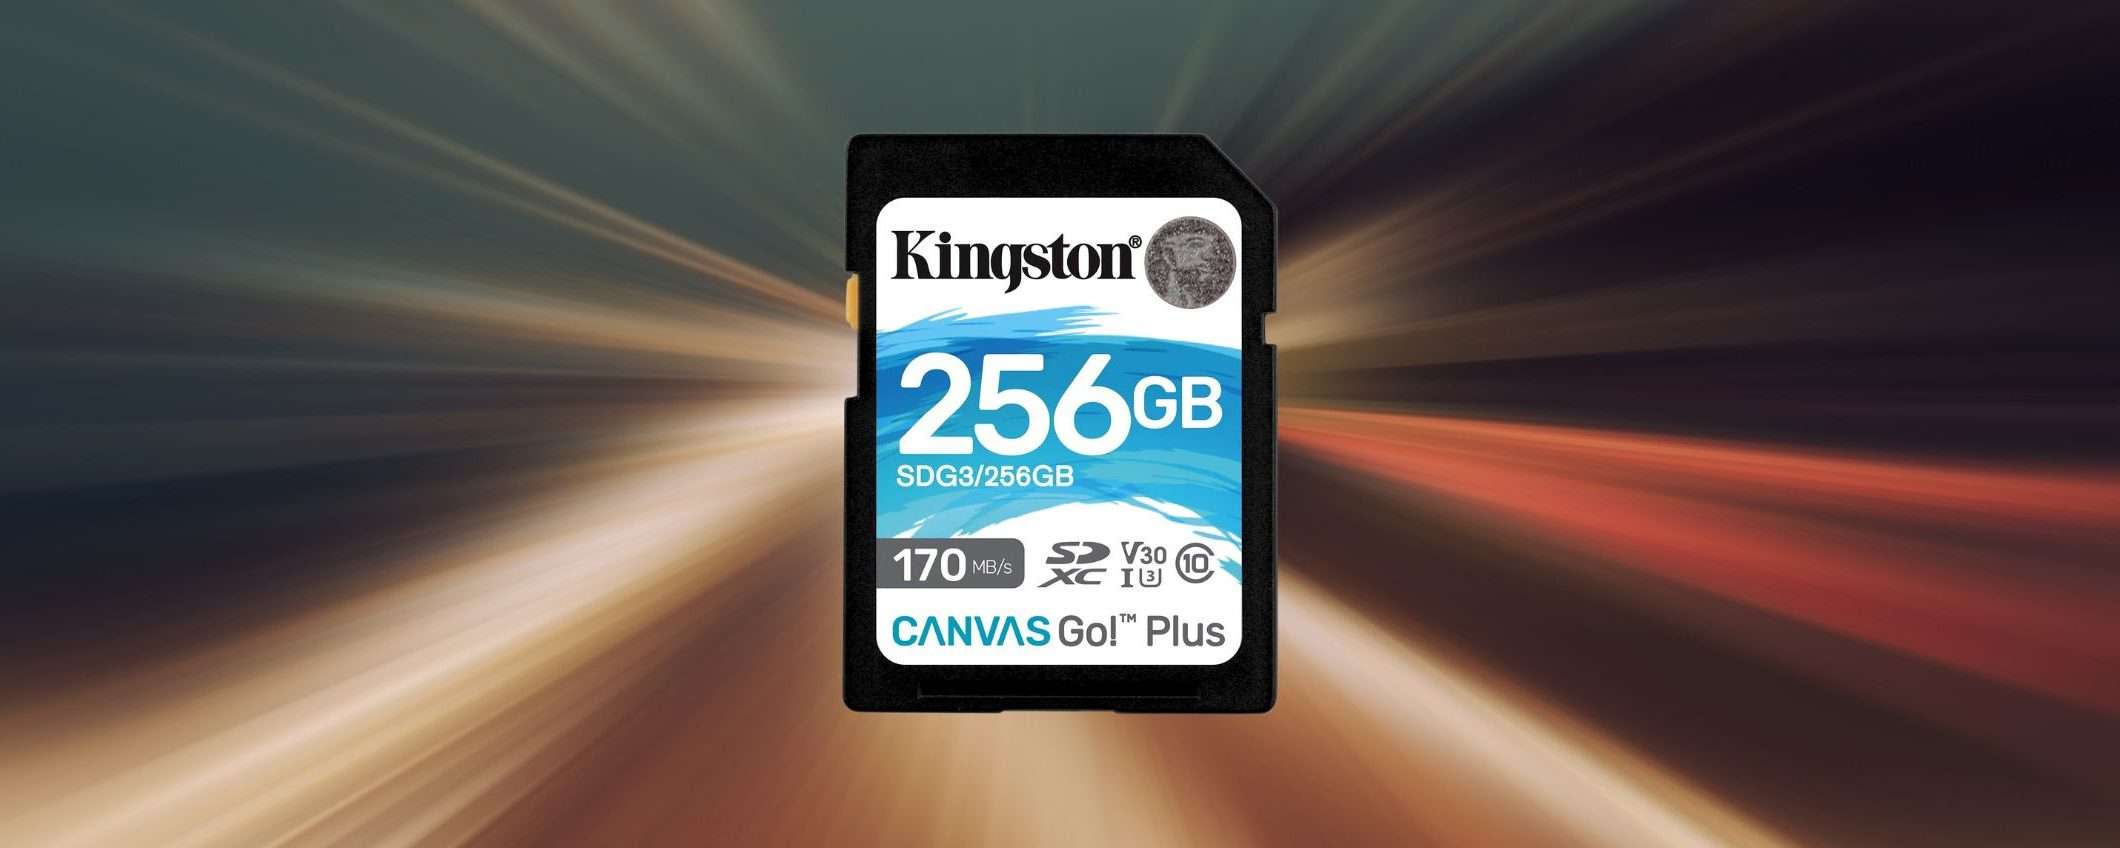 Scheda SD Kingston 256GB: prezzo BOMBA su Amazon (20€)